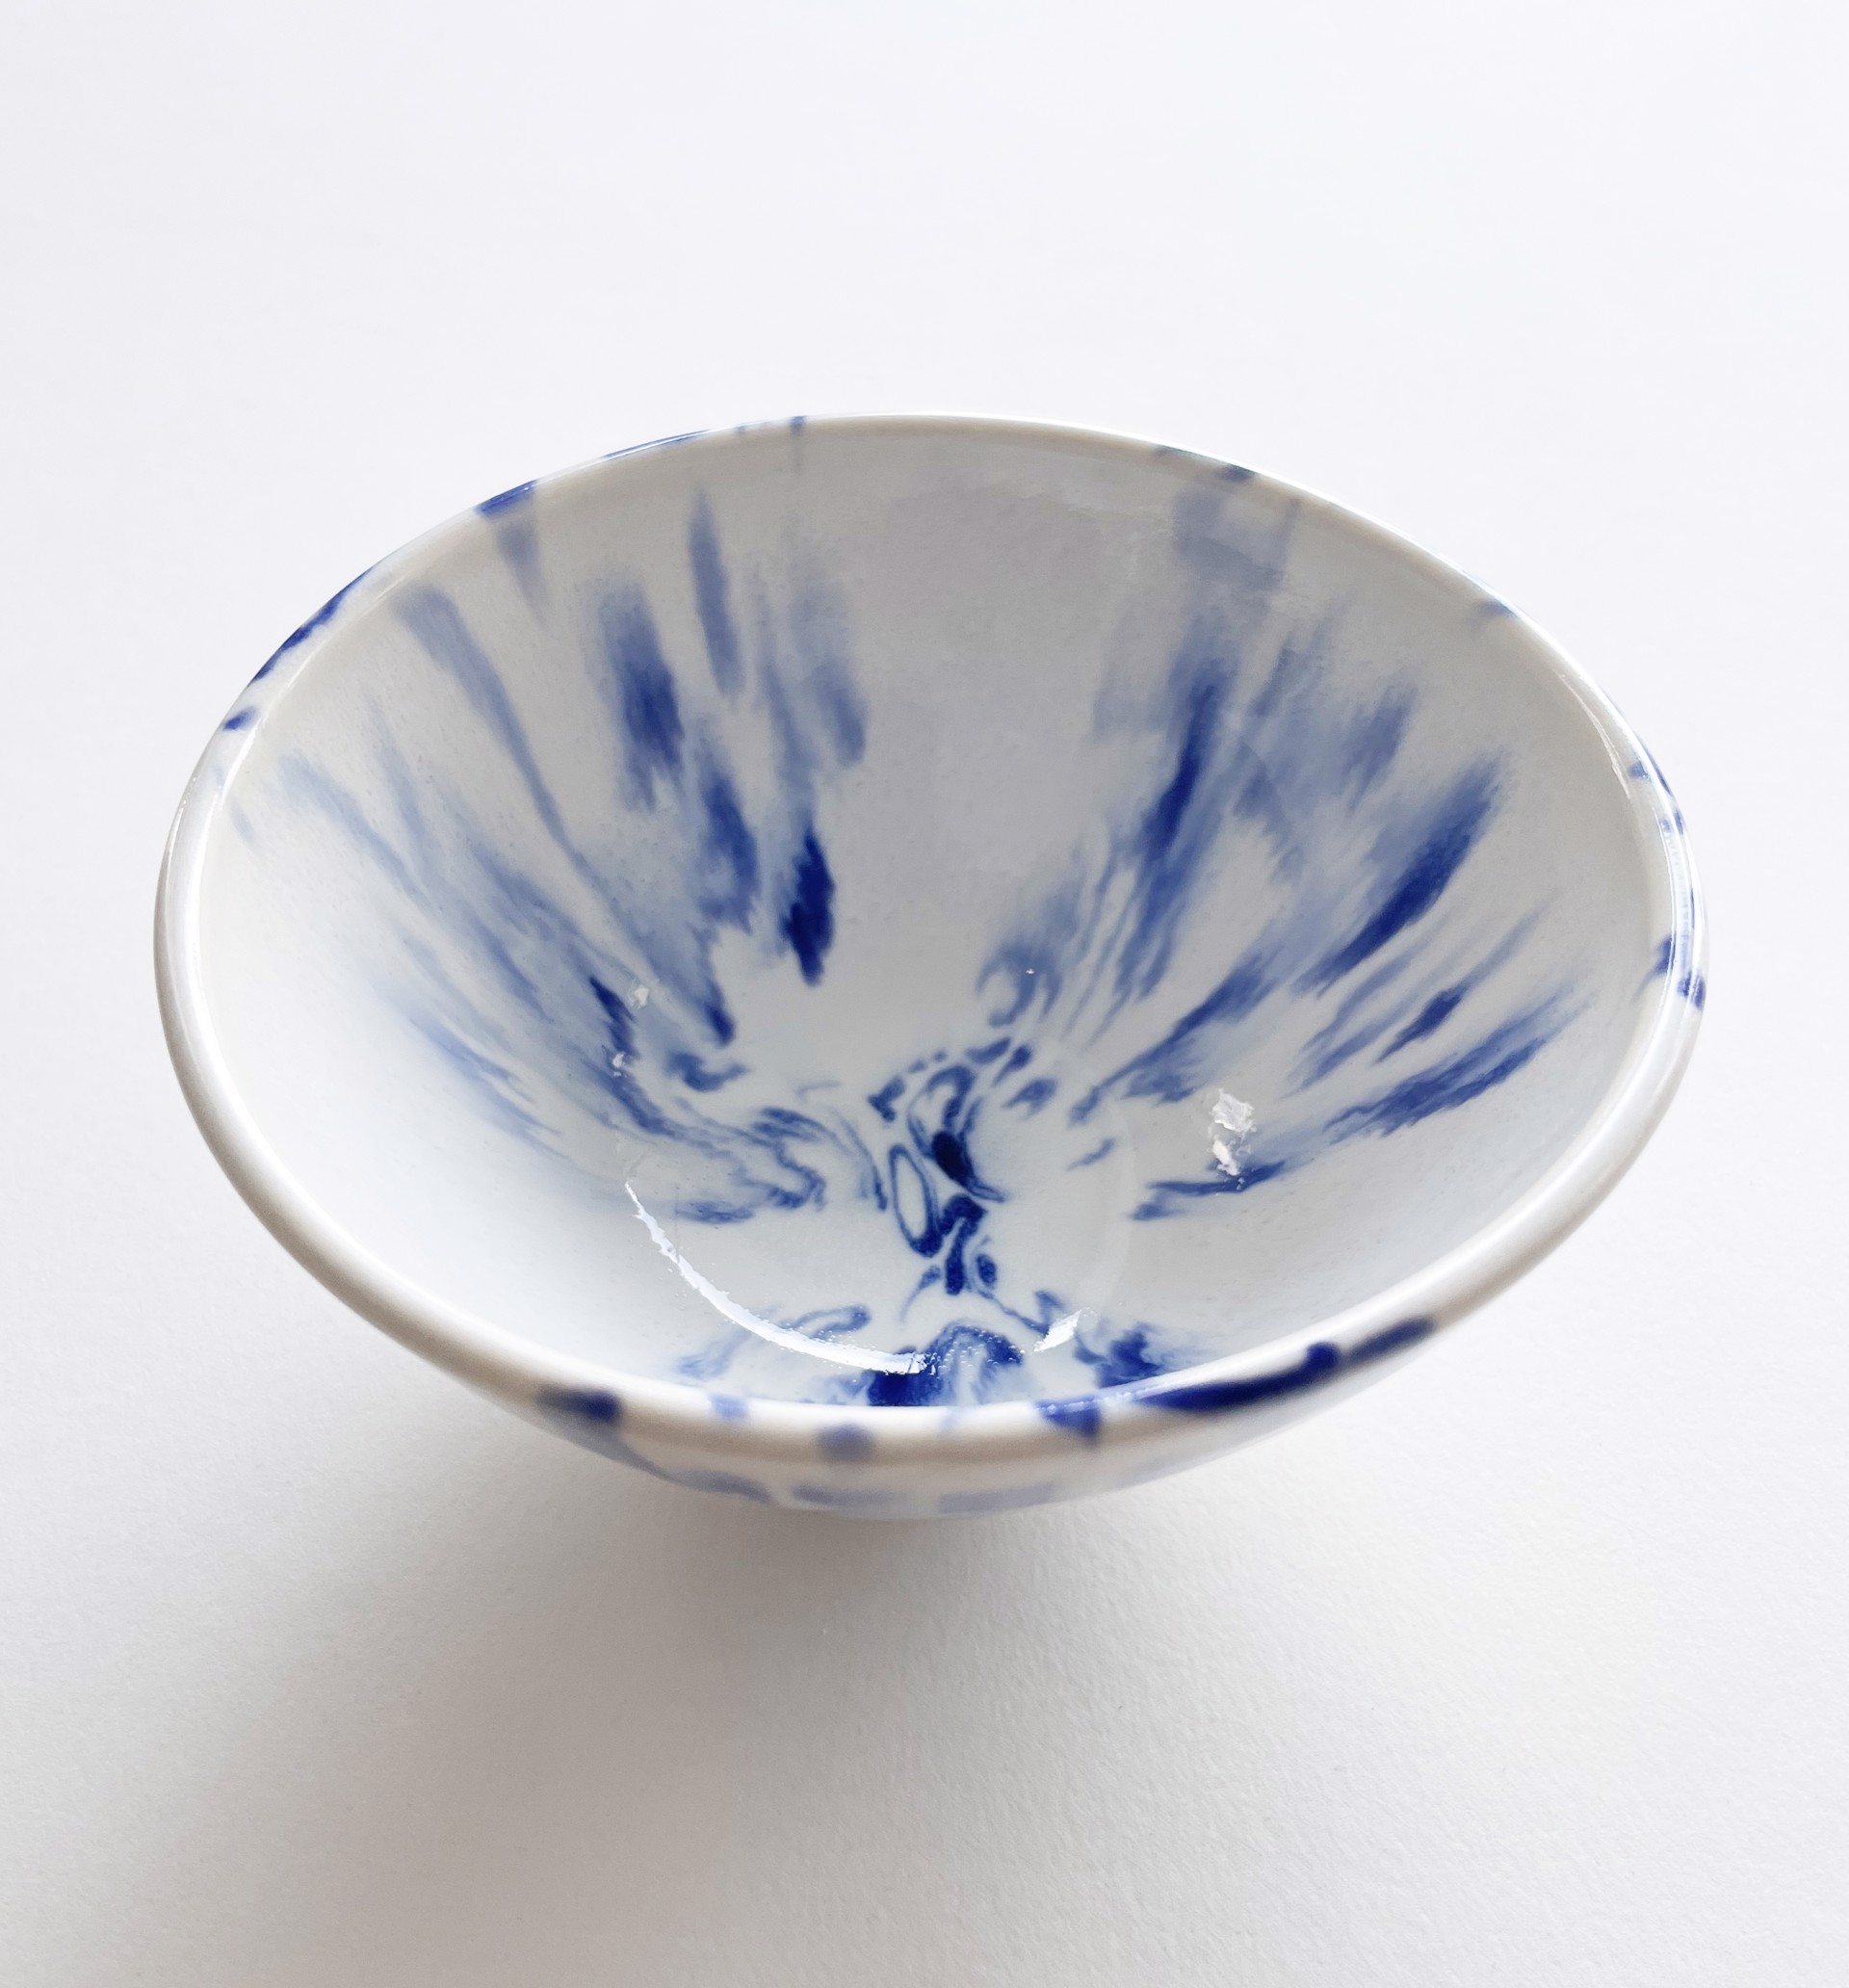 Medium Blue and White Bowl by Bean Finneran